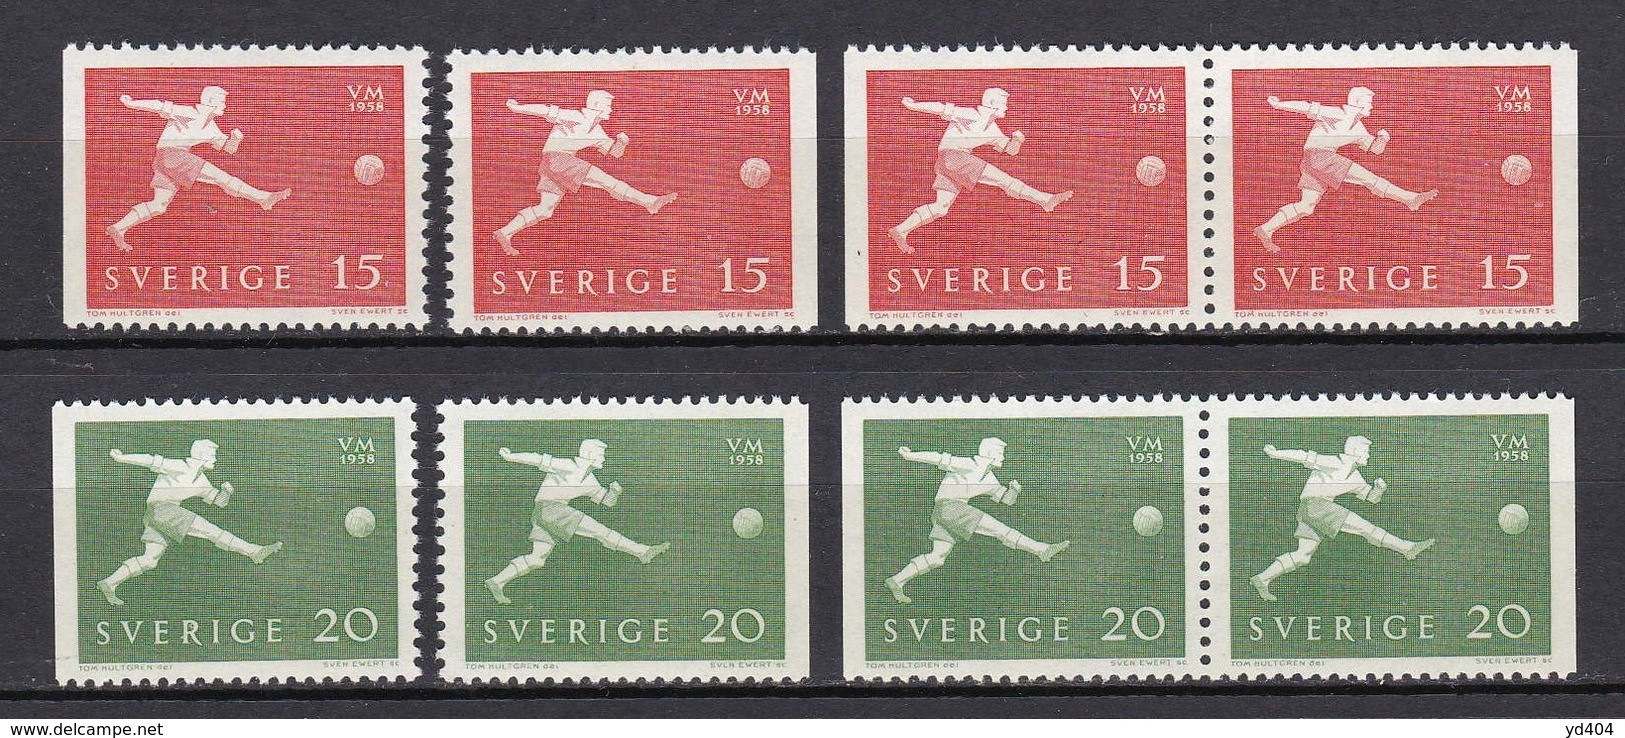 SE433 – SUEDE – SWEDEN – 1958 – WORLD FOOTBALL CUP - Y&T # 429/430 MNH - Ongebruikt